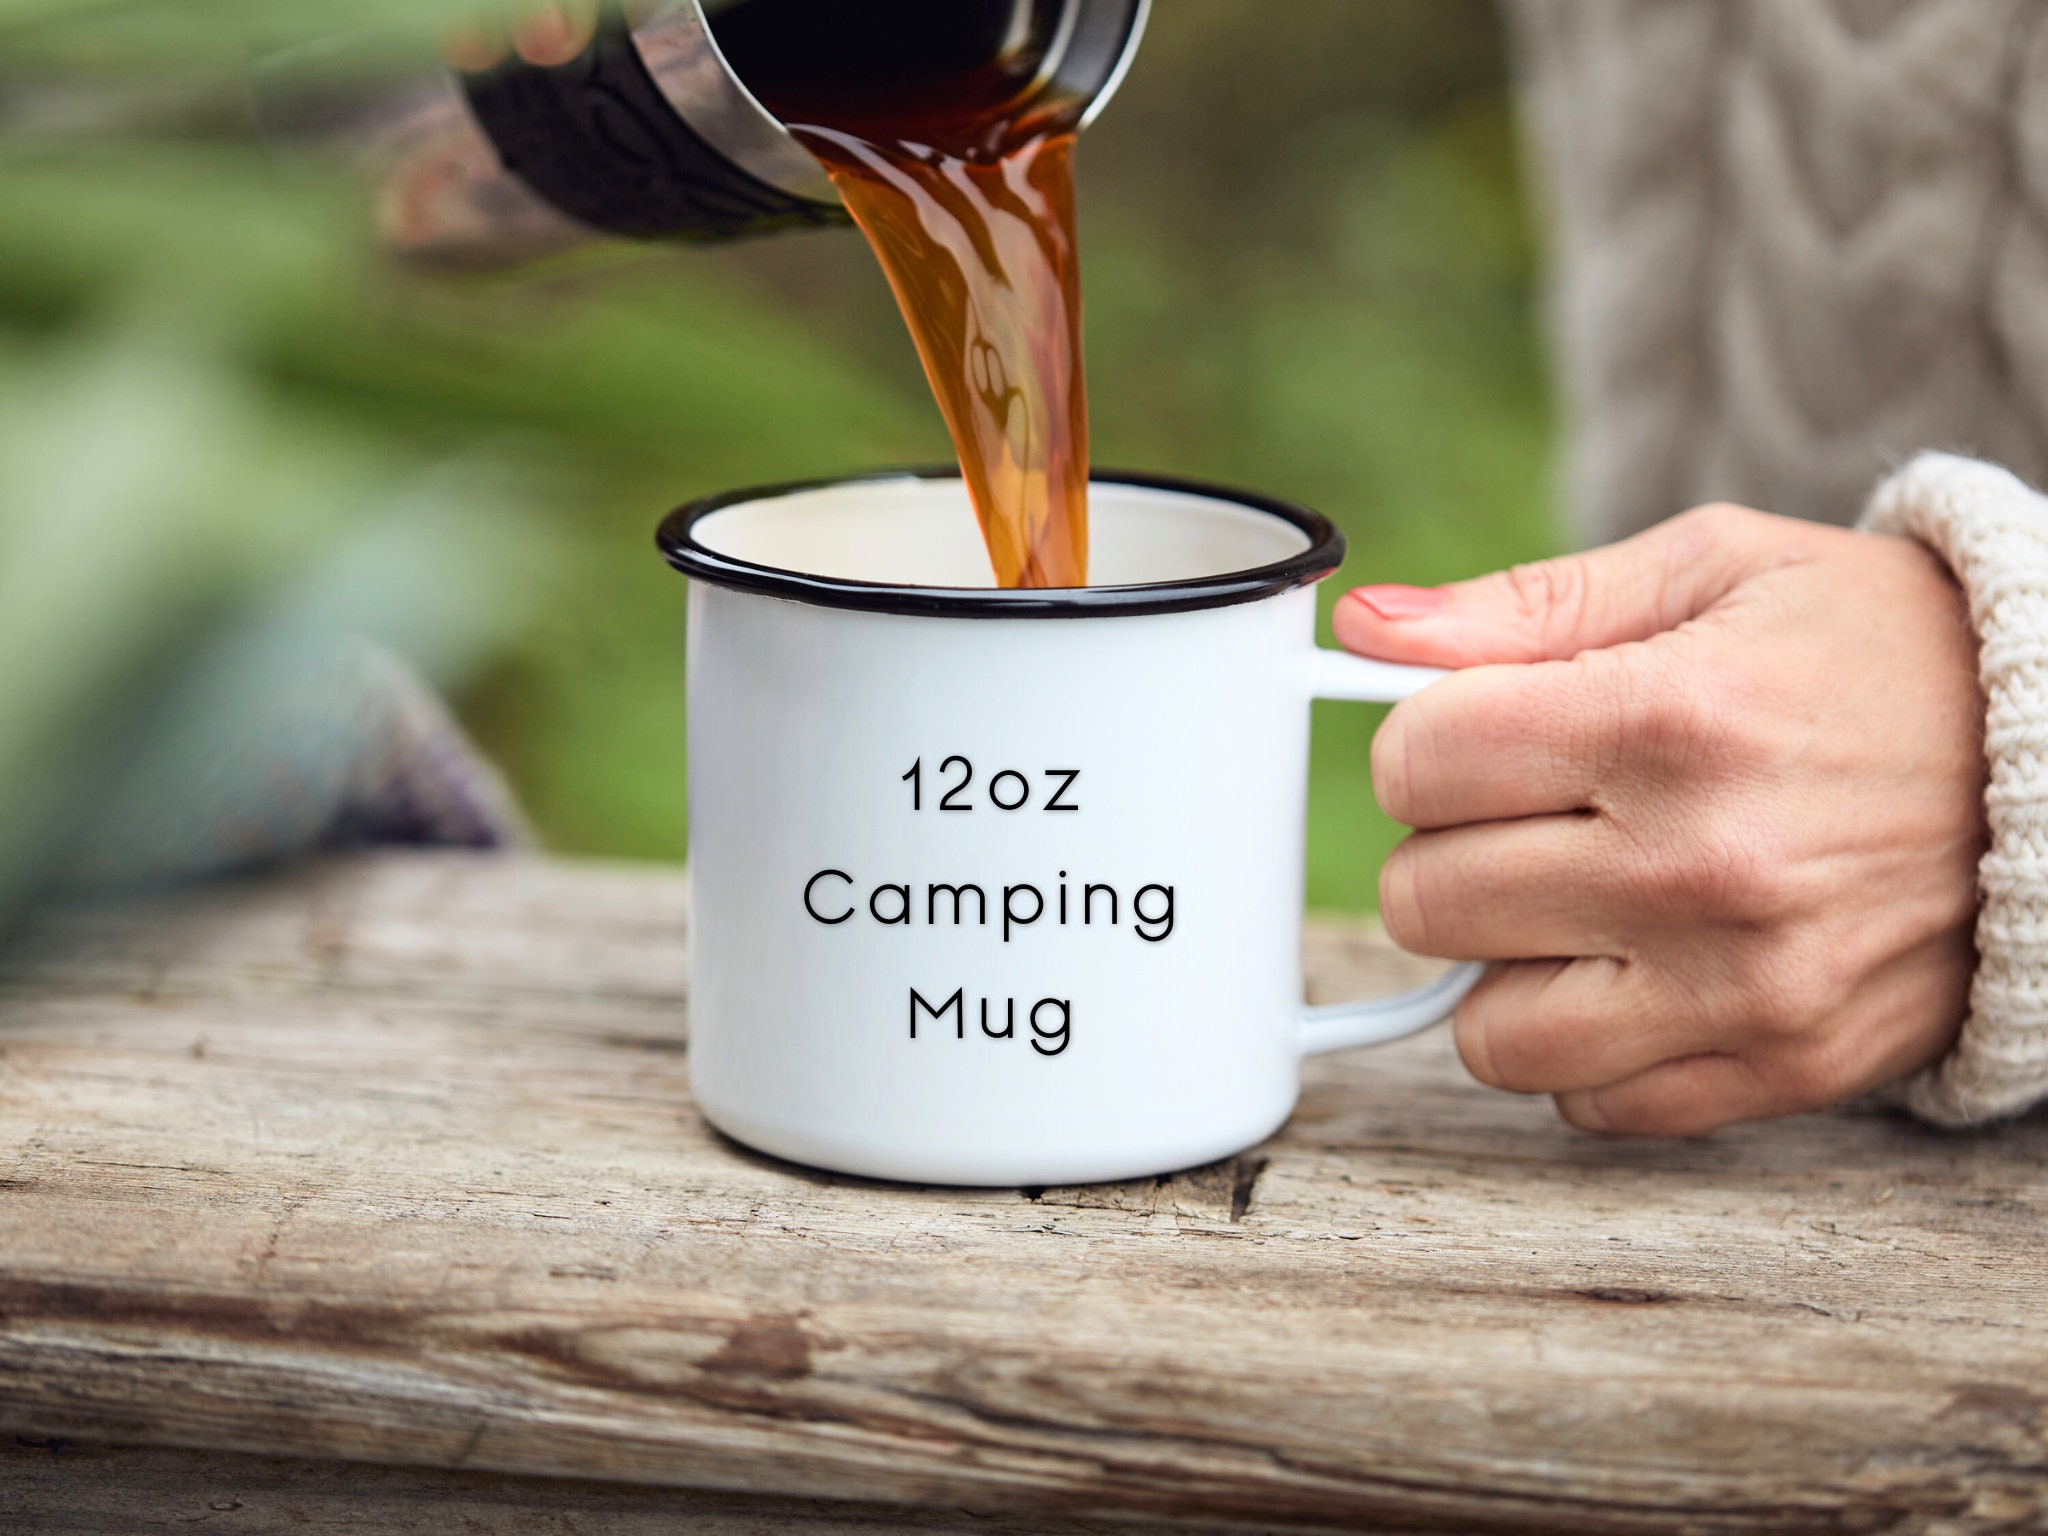  5Aup Funny Coffee Mug for Teens, Keep Calm I'm A